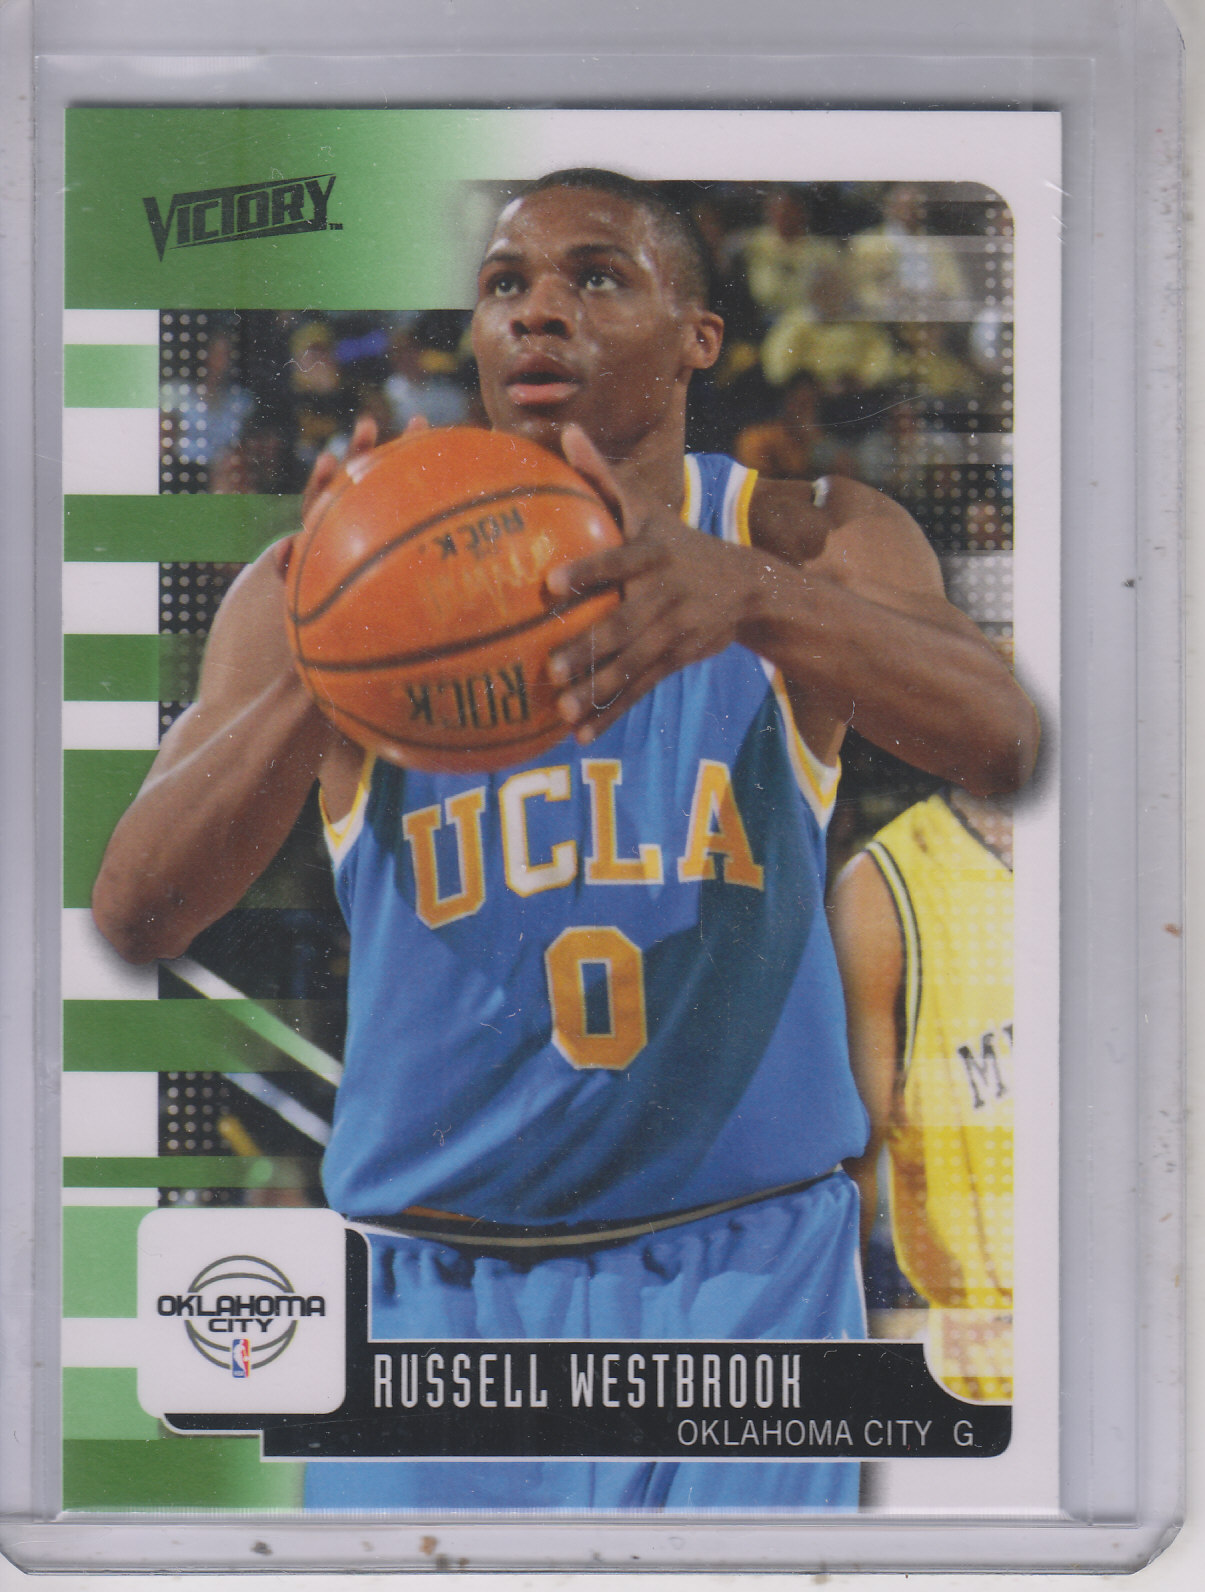 2008-09 Upper Deck MVP Victory #64 Russell Westbrook